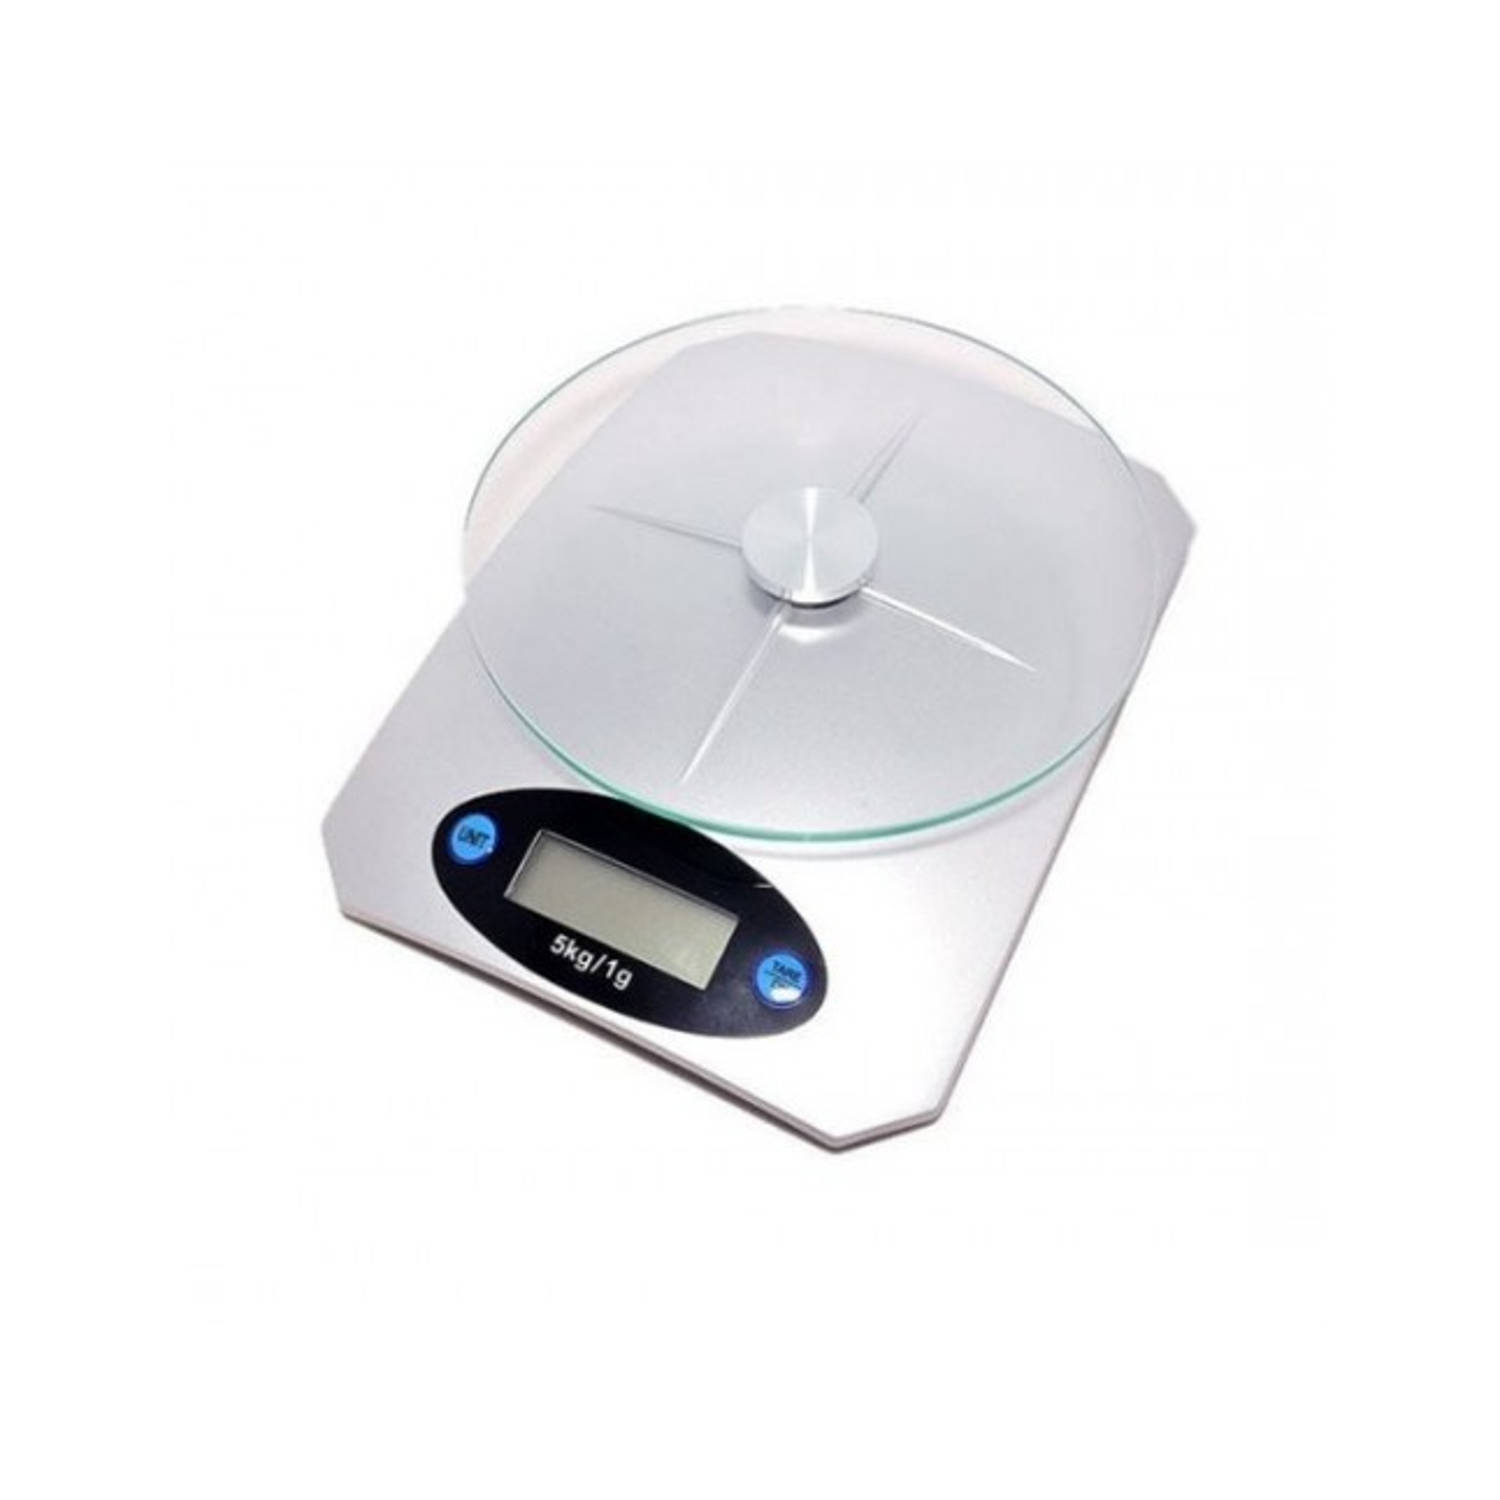 Imperial Houseware - Digitale Keukenweegschaal - 1 gram tot 5kg